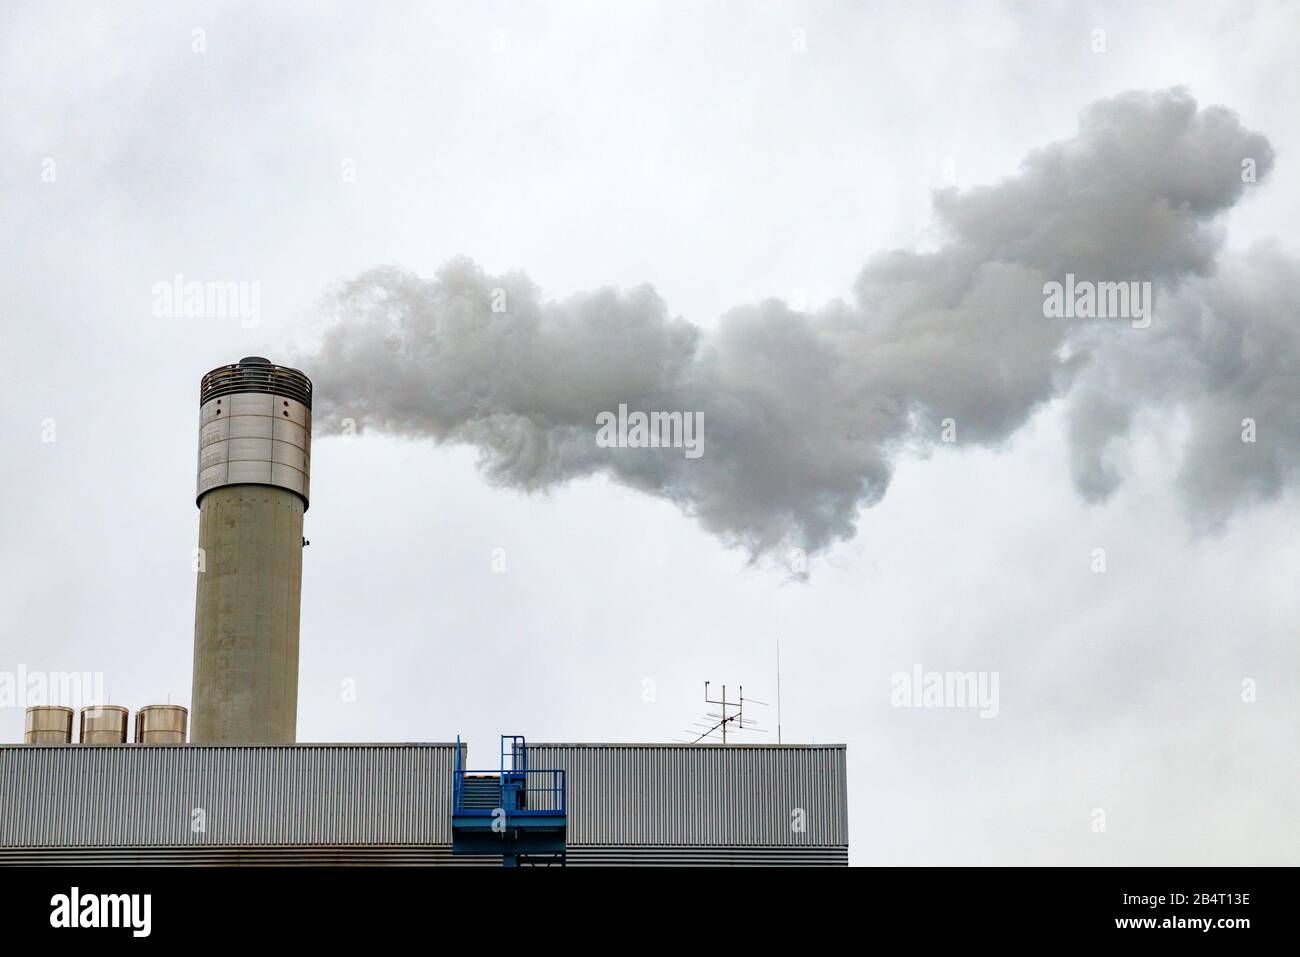 Centrale elettrica con un camino che emette gas nell'atmosfera, causando inquinamento dell'aria. Grigio, cielo nuvoloso. Foto Stock